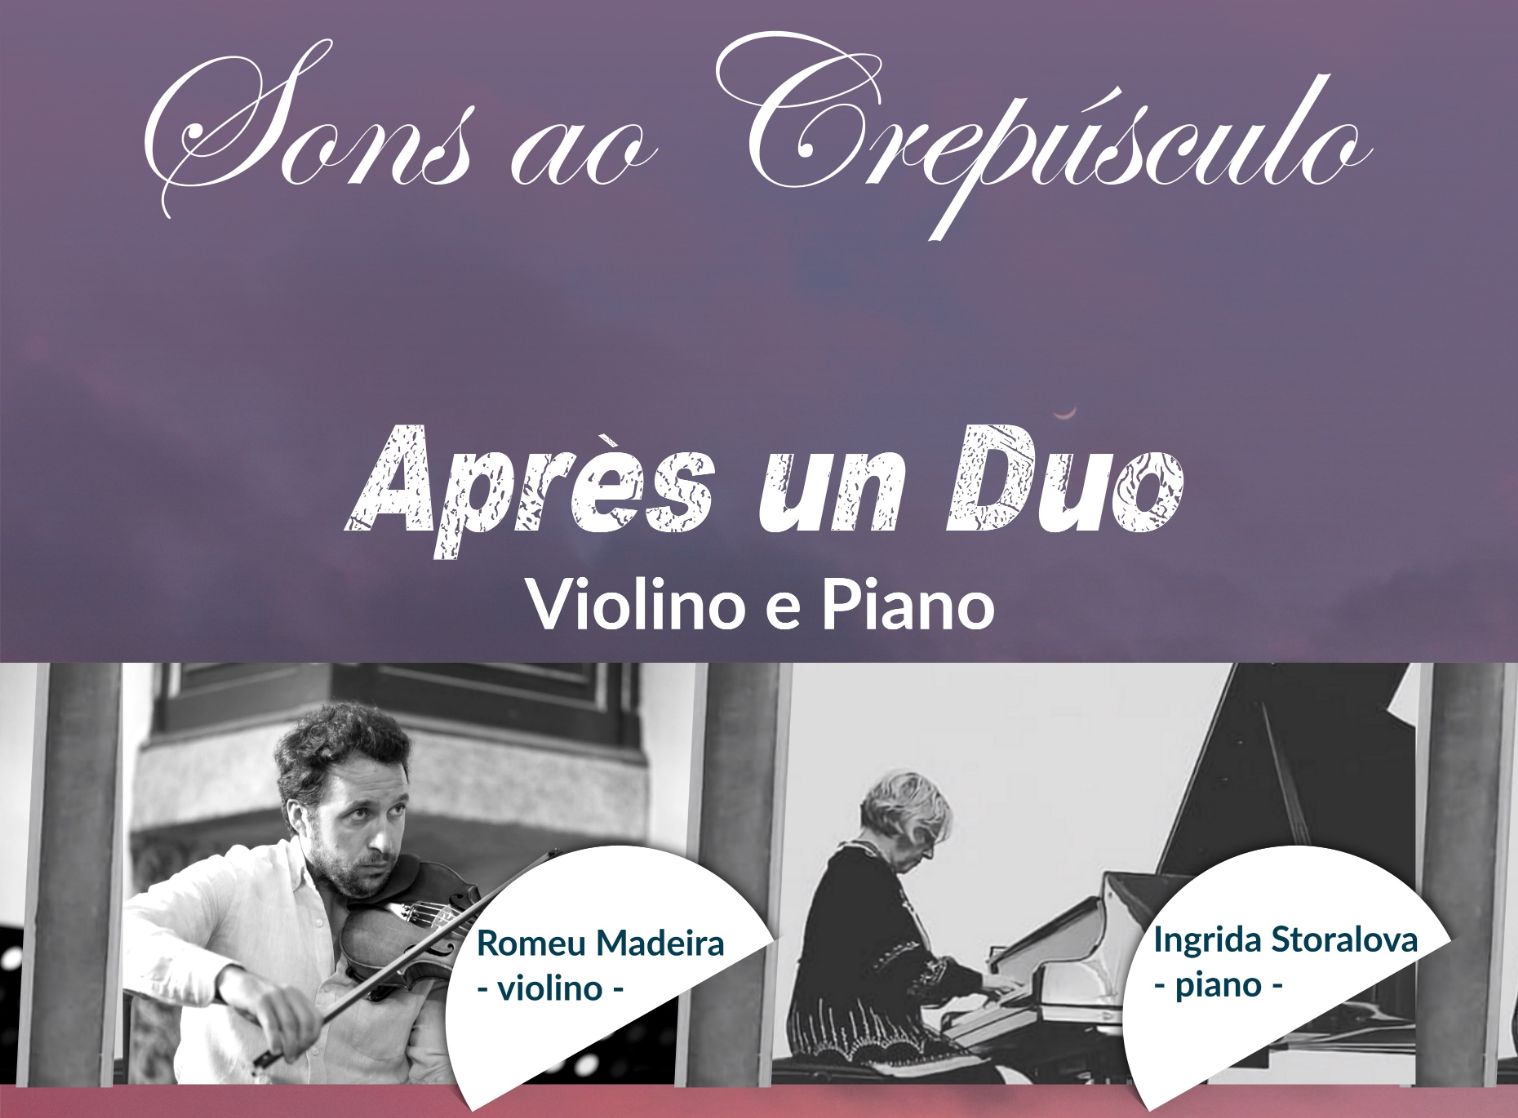 A 3.ª edição do Ciclo de Concertos comentados "Sons ao Crepúsculo” inicia-se já em Janeiro com o espectáculo «Après un duo»